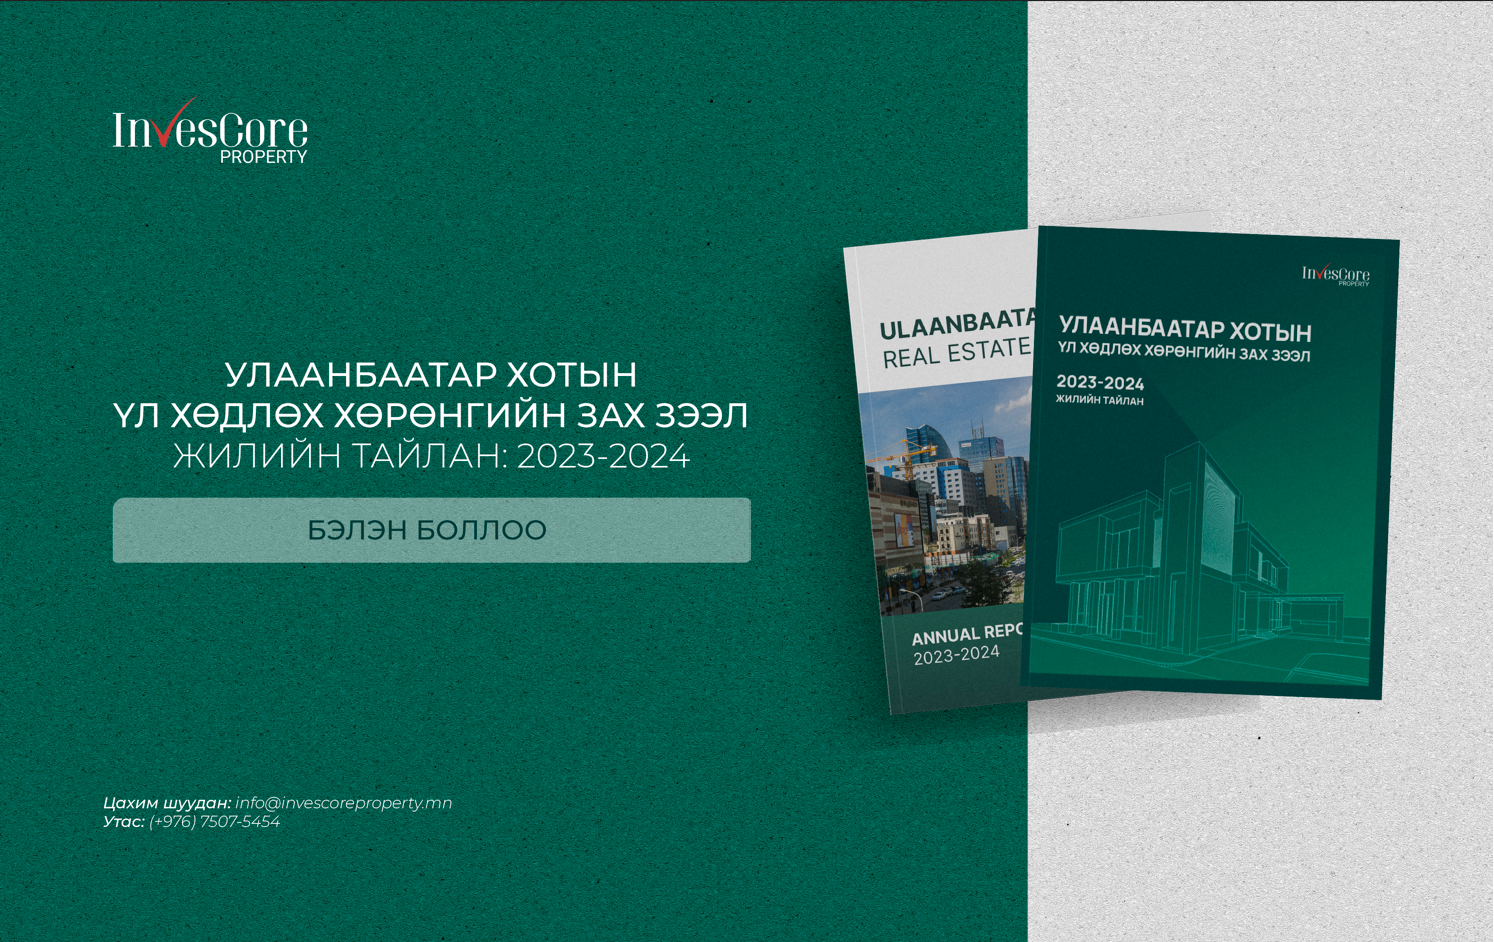 “Инвескор Проперти” ХХК: “Улаанбаатар хотын үл хөдлөх хөрөнгийн зах зээл” жилийн тайлан 2023-2024